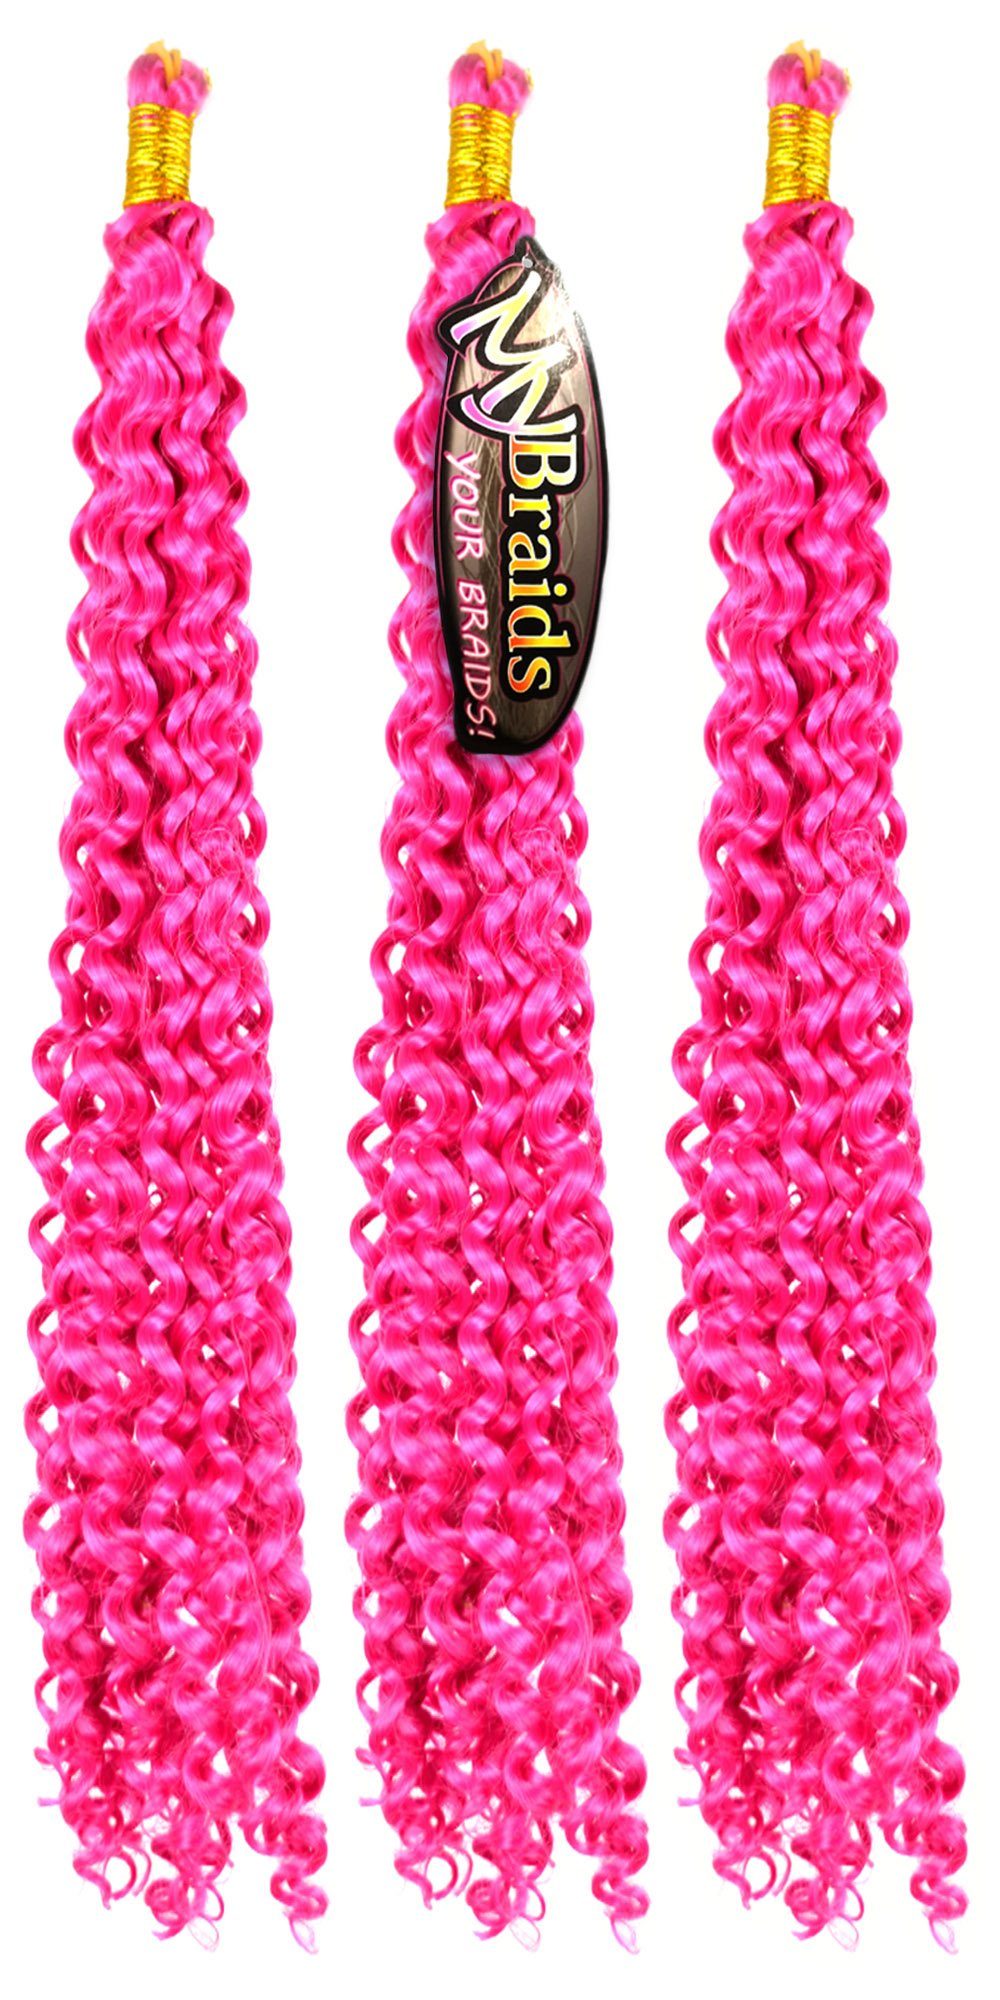 MyBraids YOUR BRAIDS! 12-W 3er Crochet Kunsthaar-Extension Zöpfe Deep Pack Flechthaar Fuchsia Braids Wave Wellig